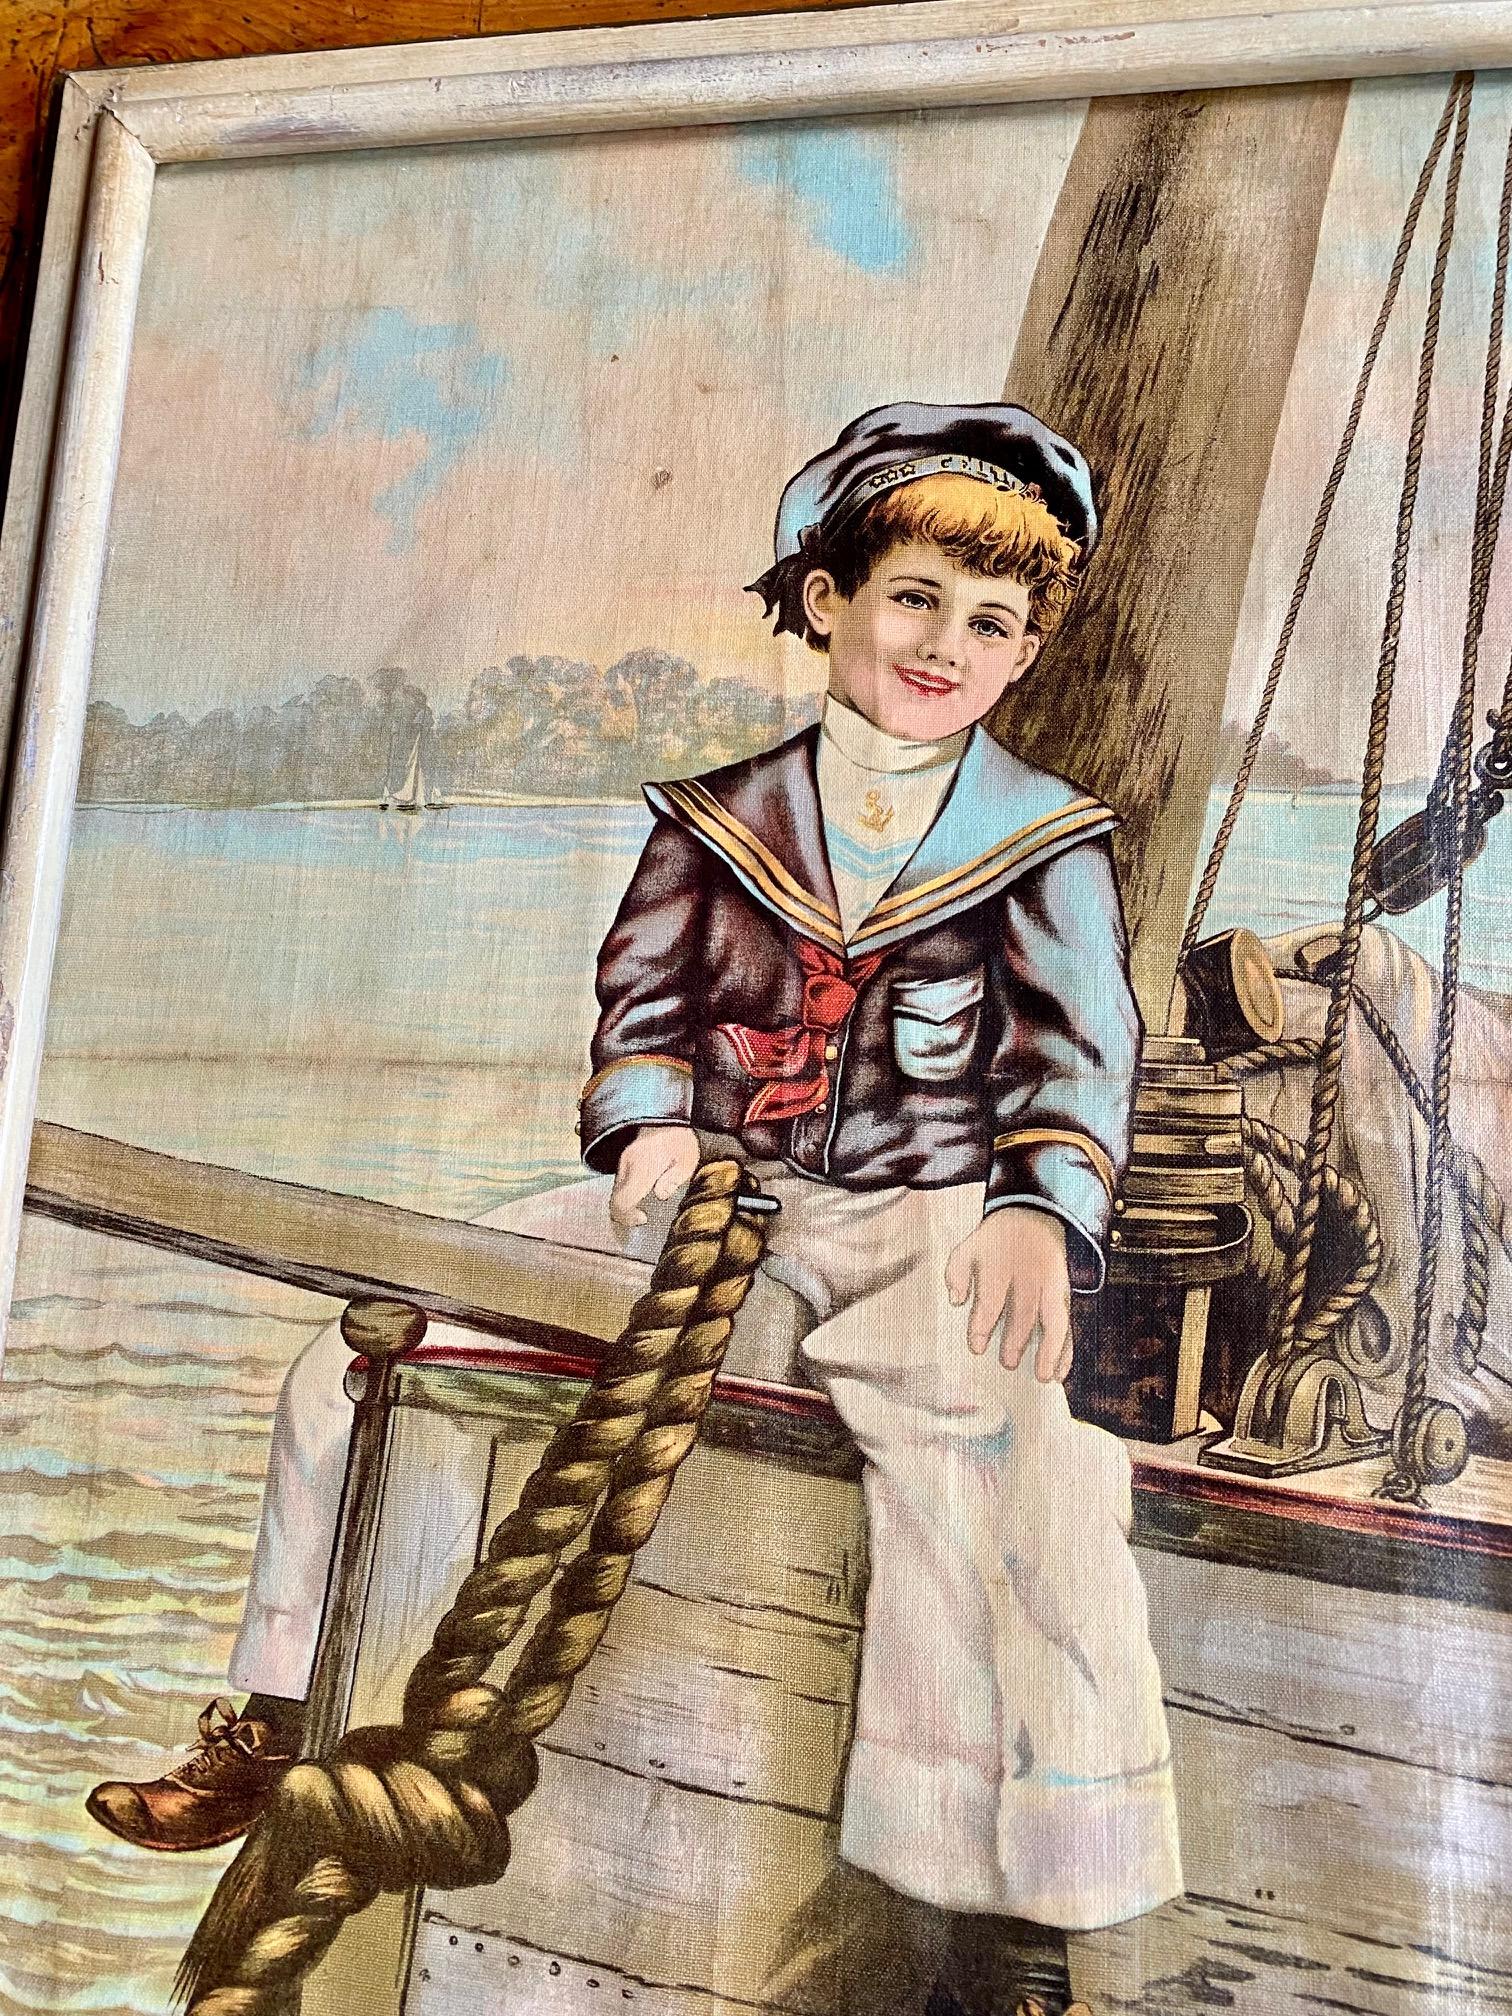 Chromolithographie eines Matrosenjungen aus dem 19. Jahrhundert, um 1880, ein Farbdruck auf Leinwand, der einen jungen amerikanischen Matrosen rittlings auf einem Bugspriet sitzend zeigt. Ein klassisches Bild mit Charme und großem Detailreichtum